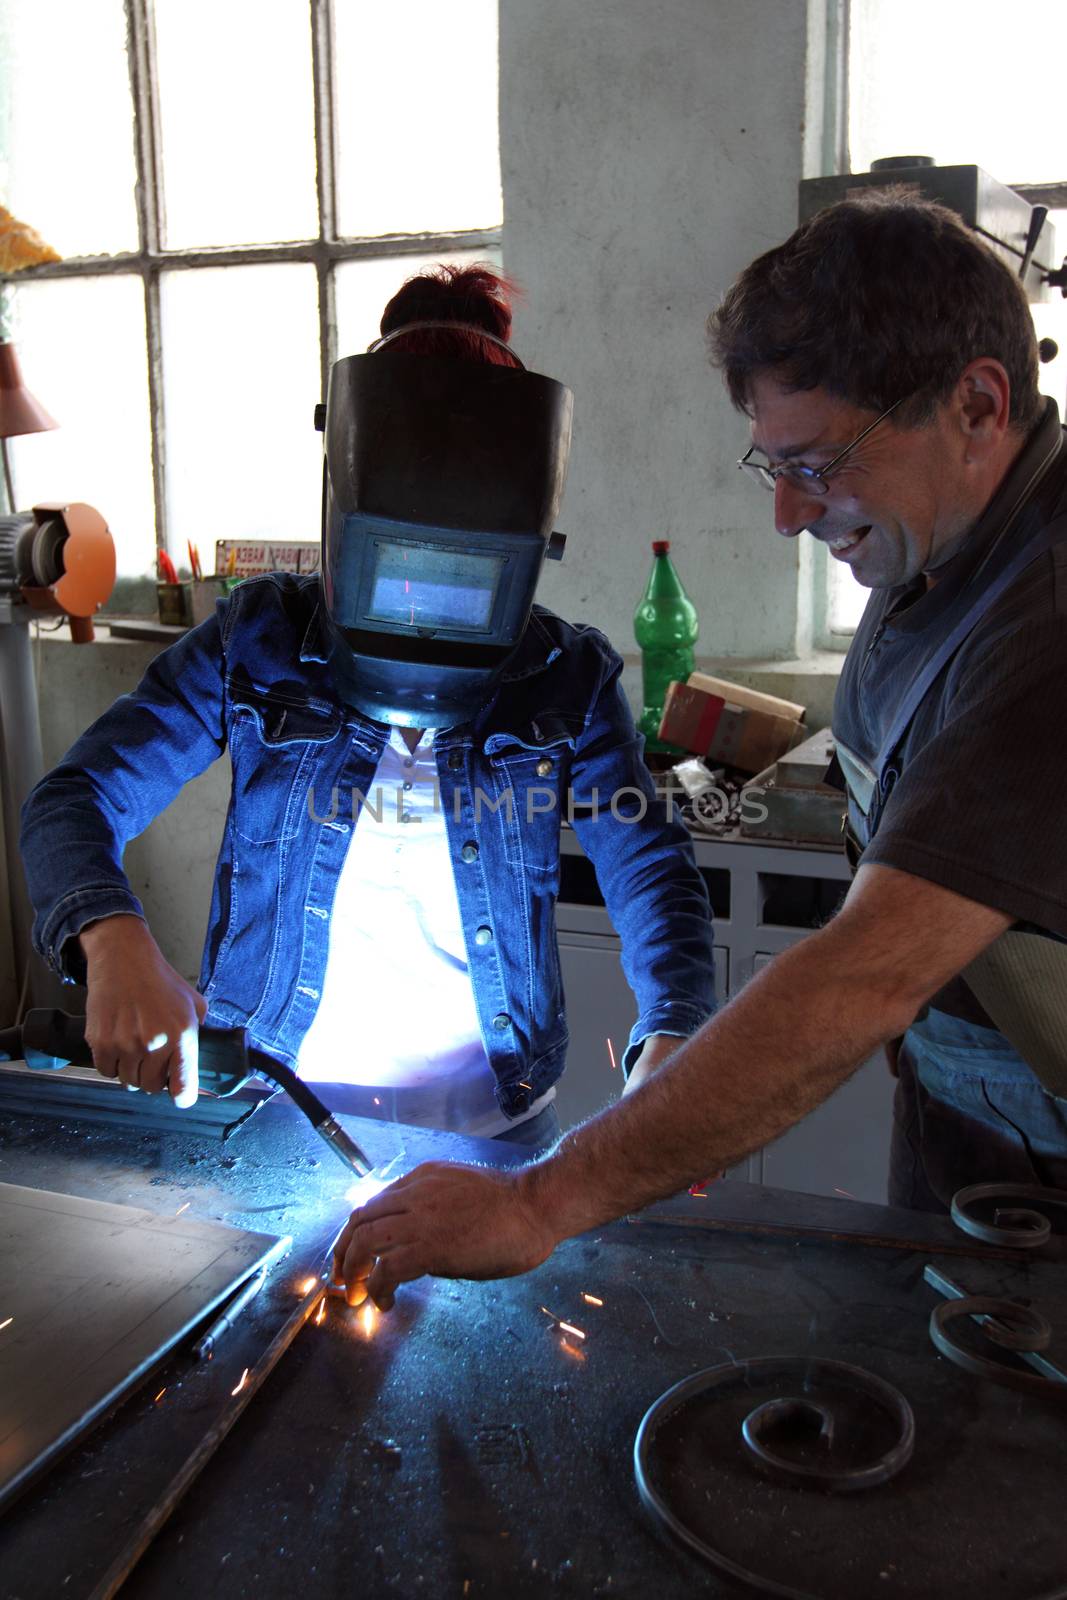 workers welding by alexkosev